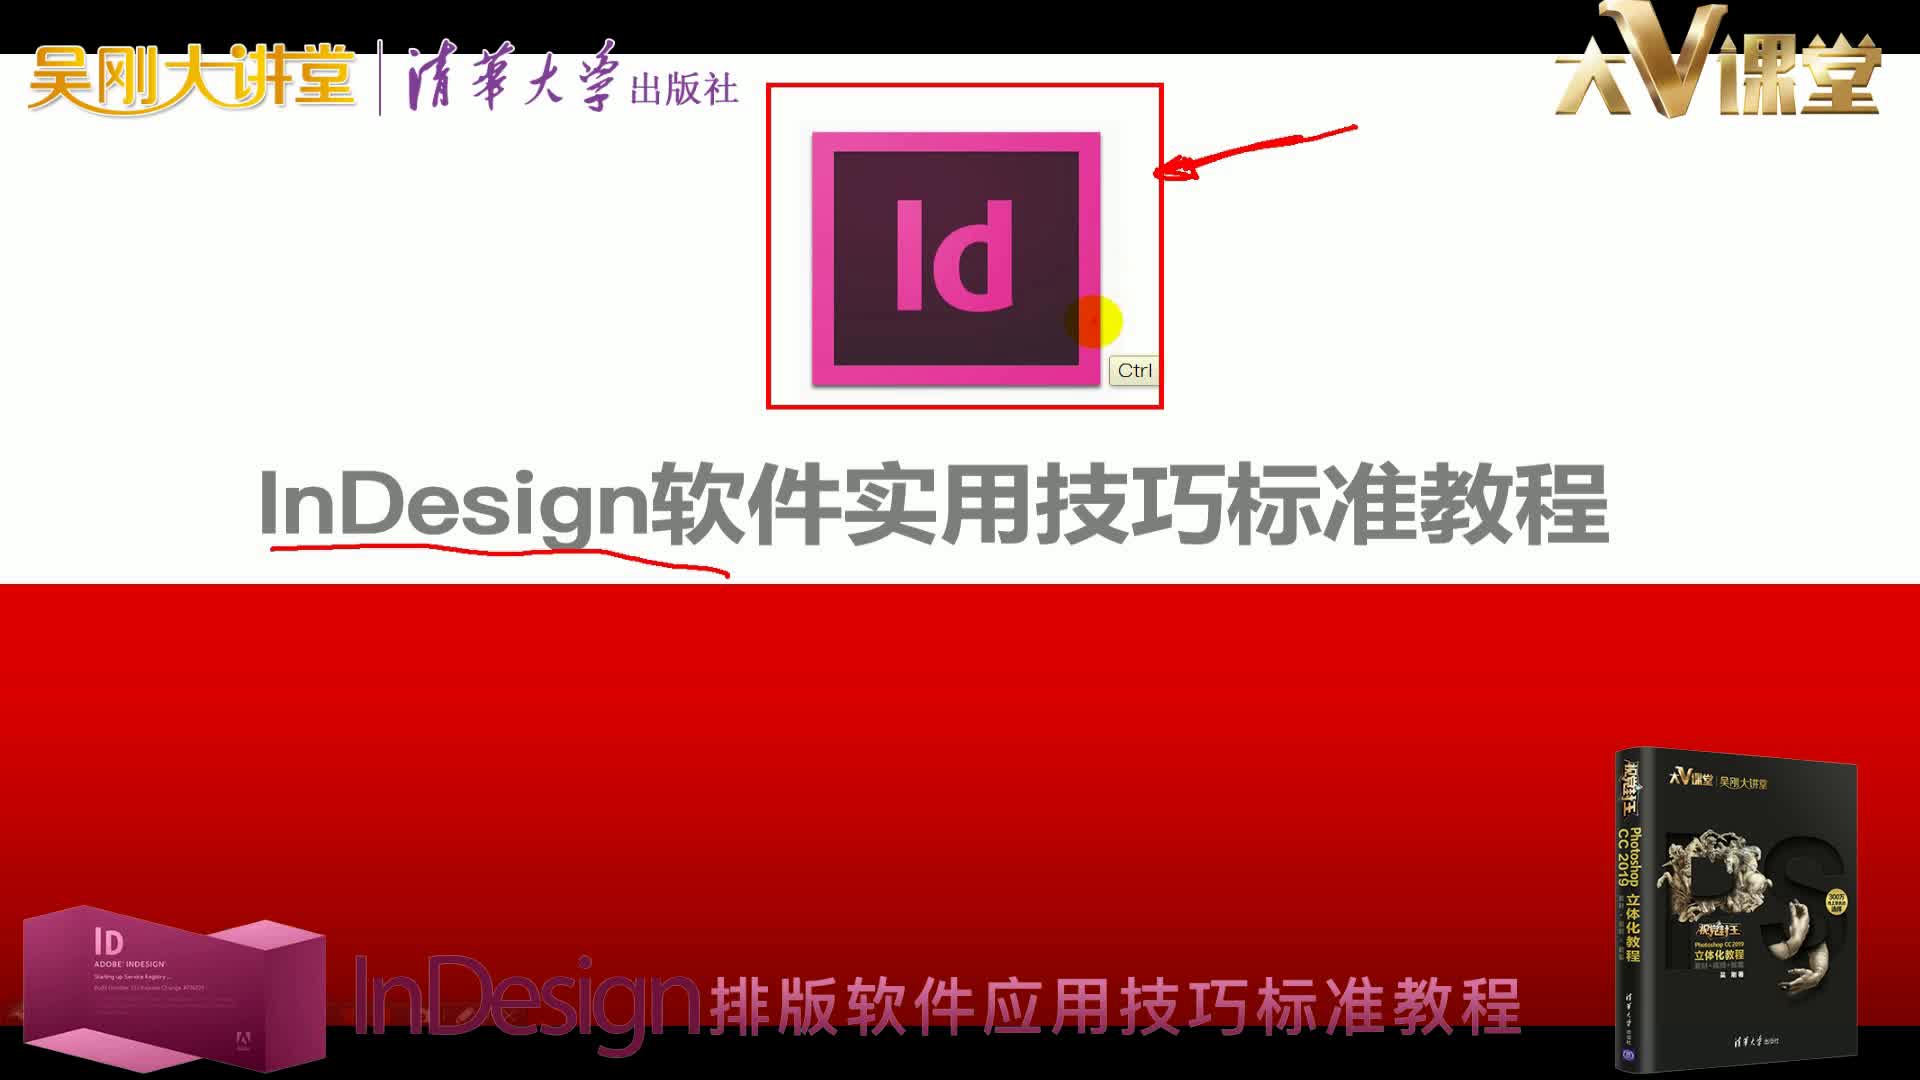 【吴刚大讲堂】InDesign排版软件应用技巧标准教程